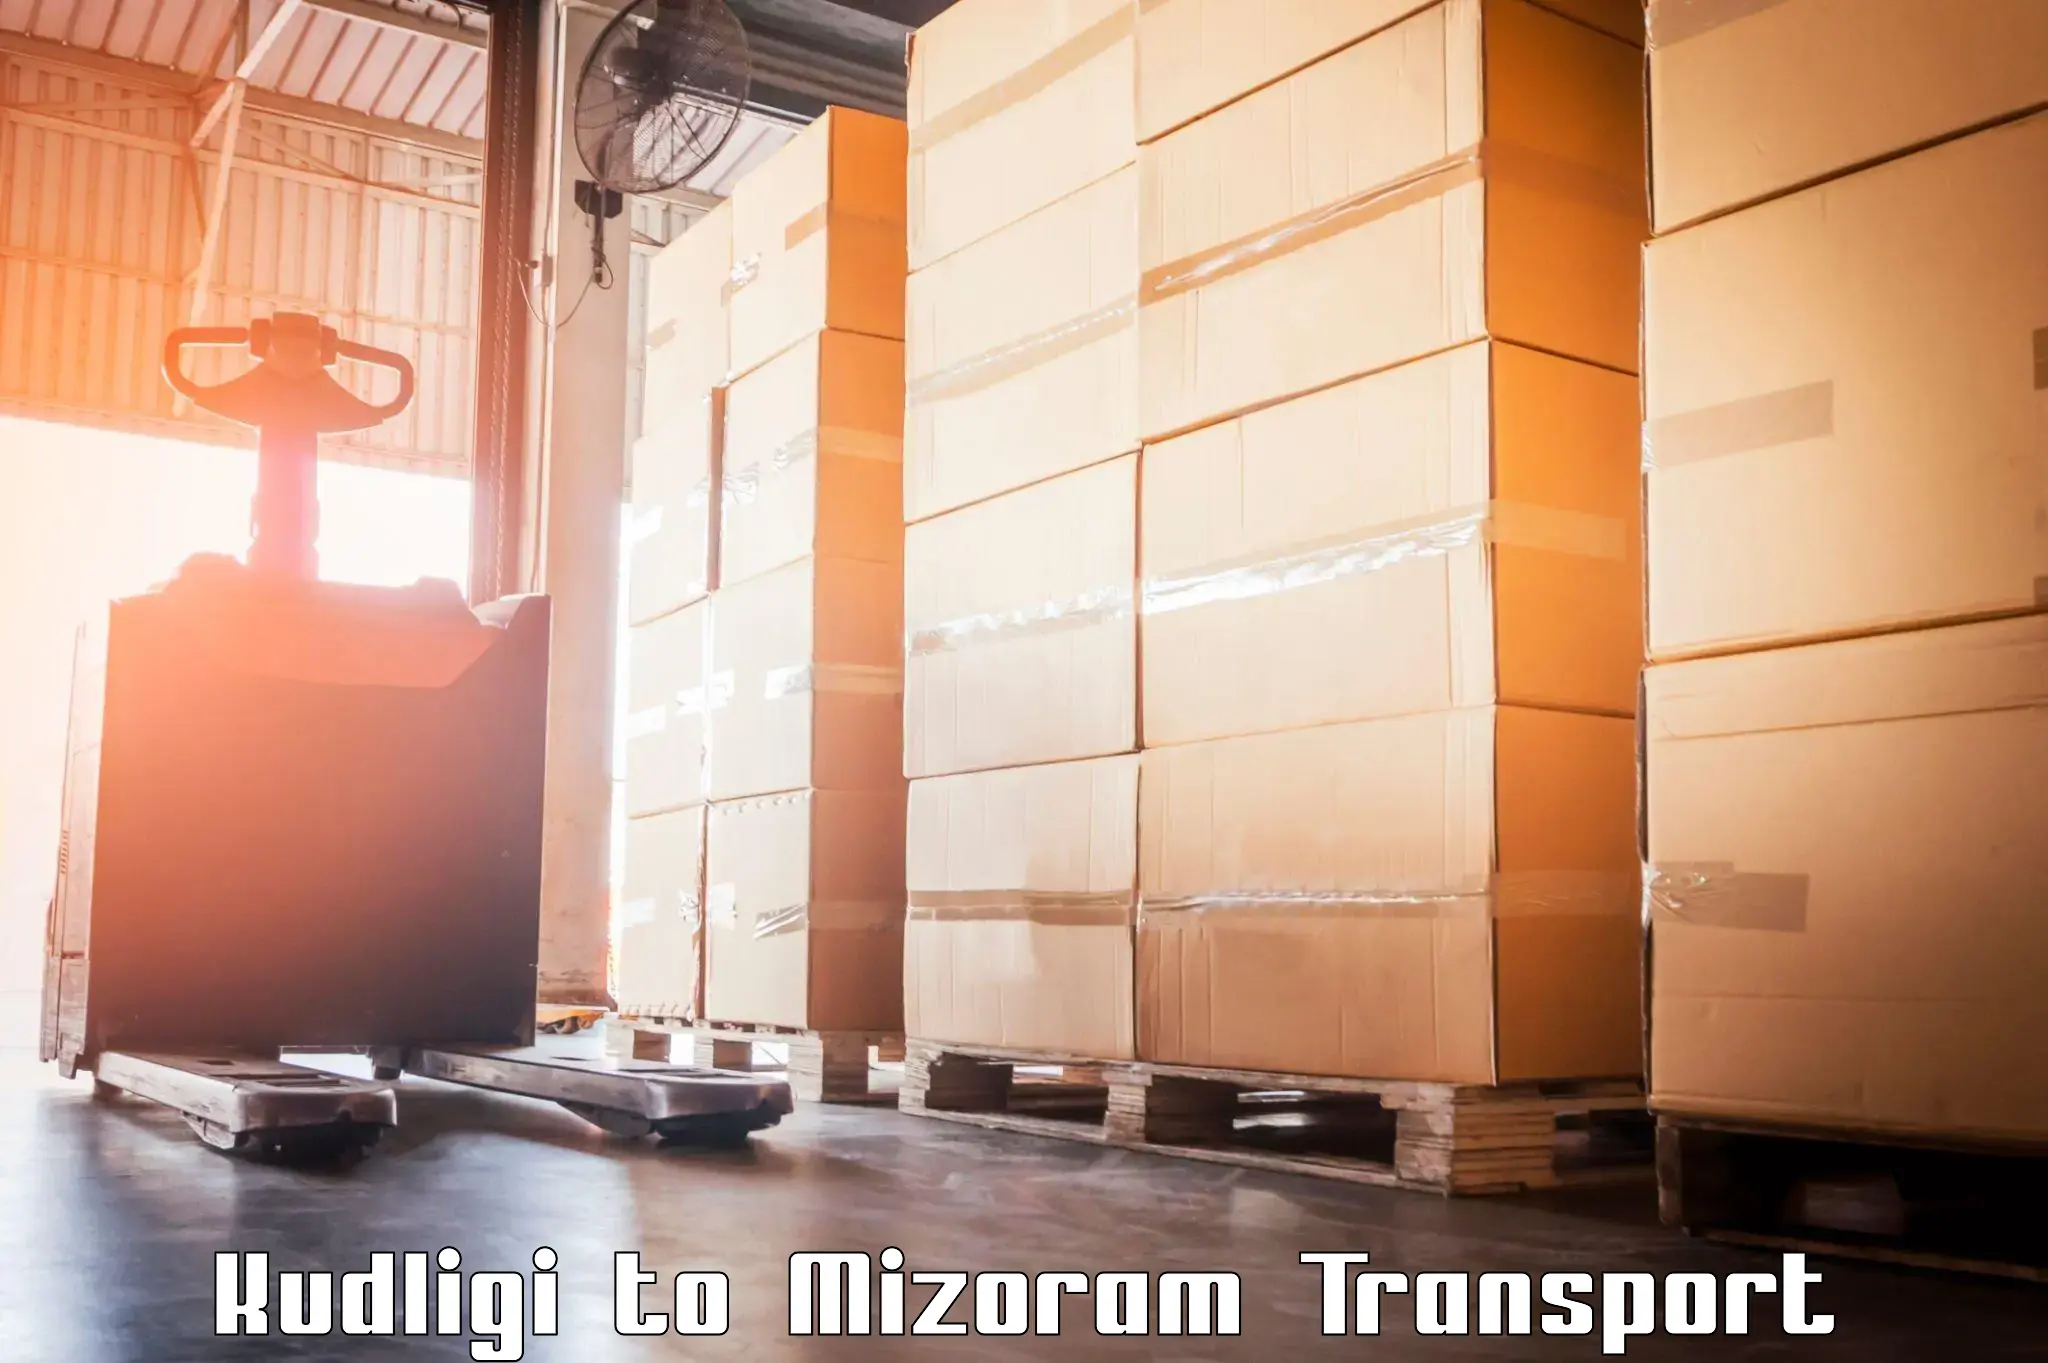 International cargo transportation services Kudligi to Thenzawl